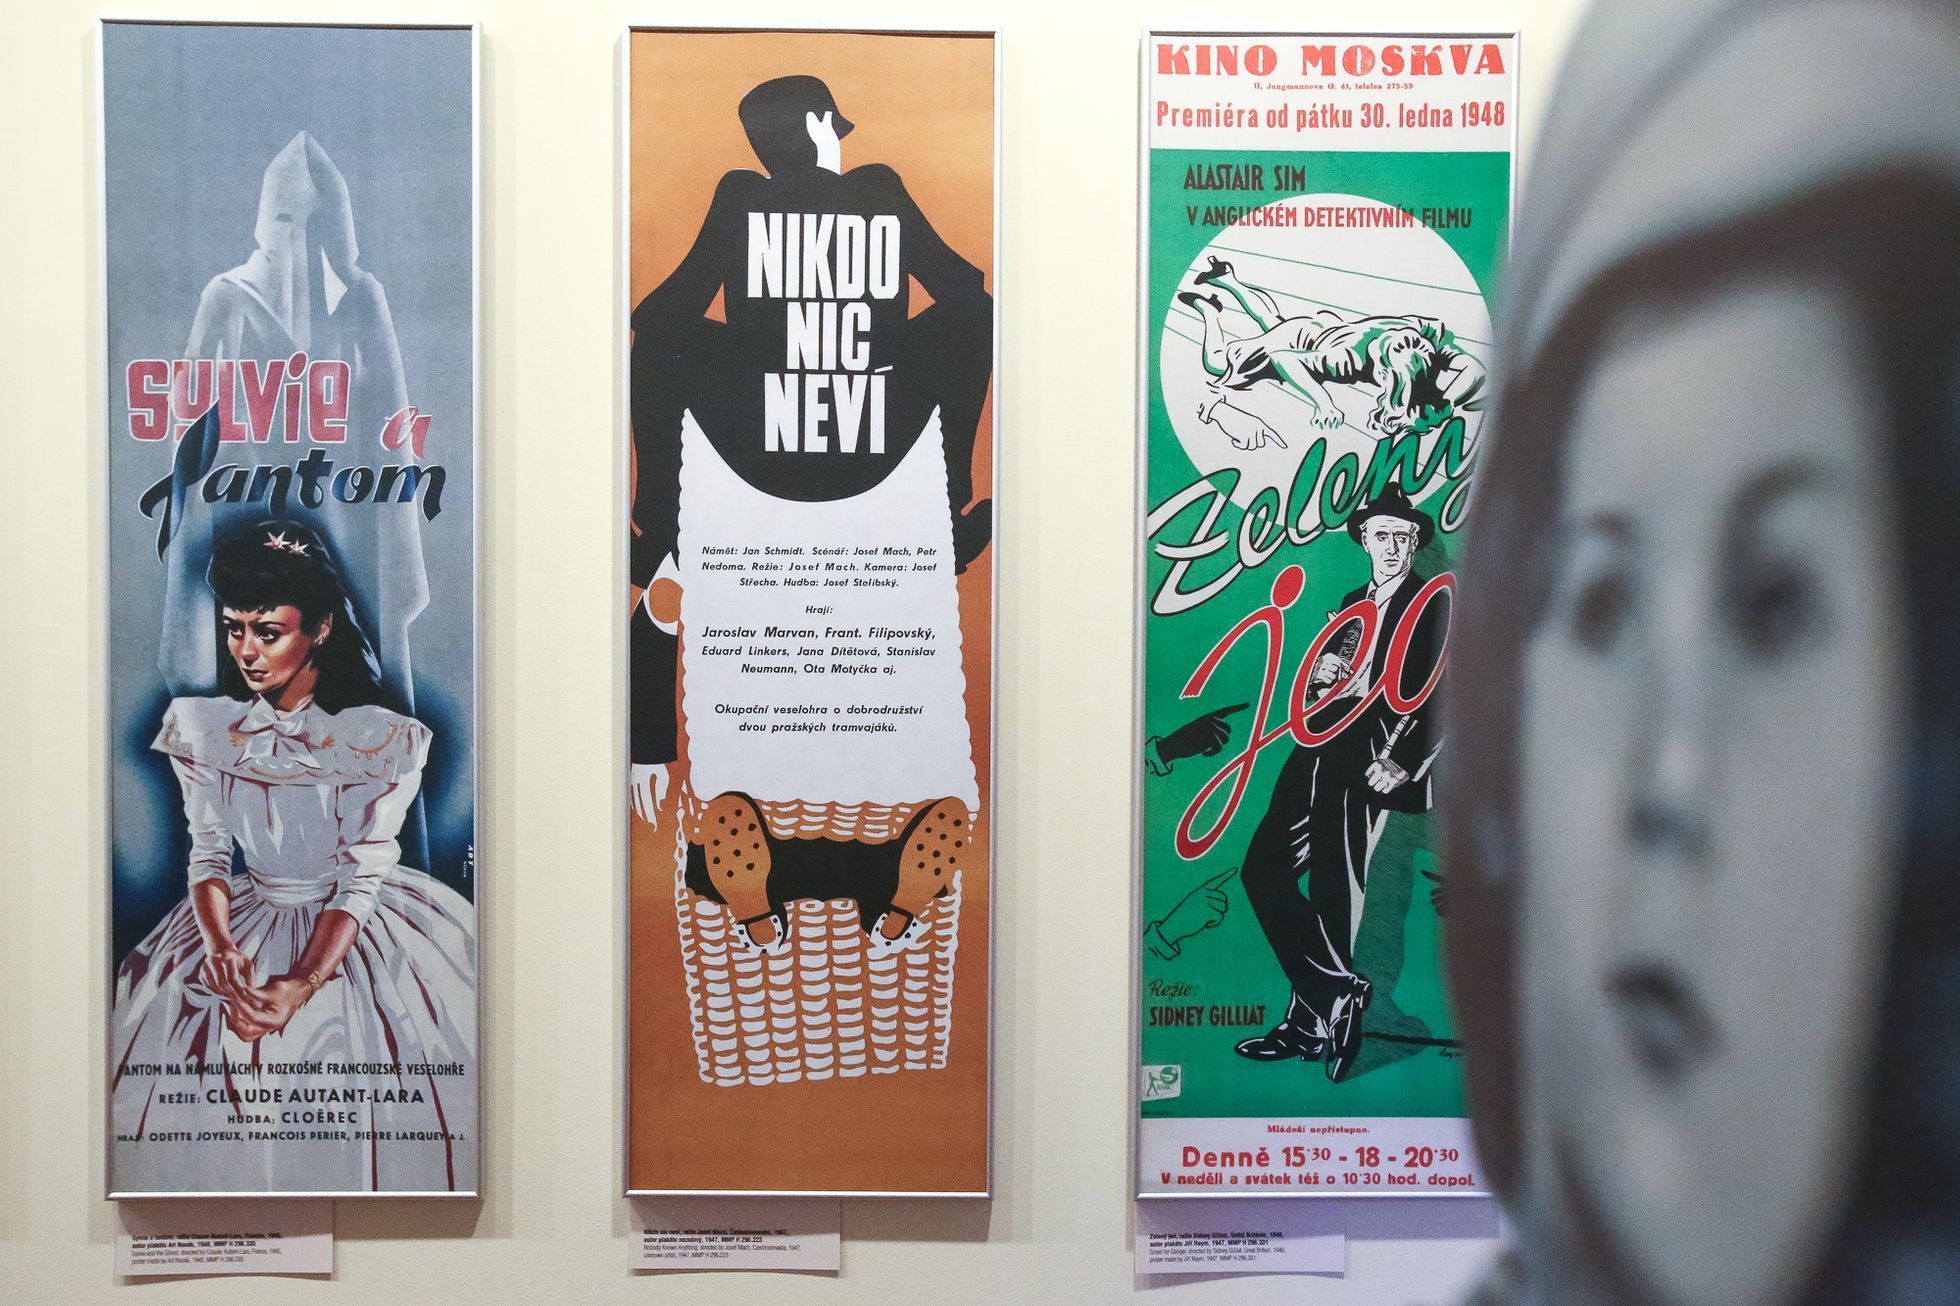 Český filmový plakát 1931-1948 - výstava v Muzeu Prahy